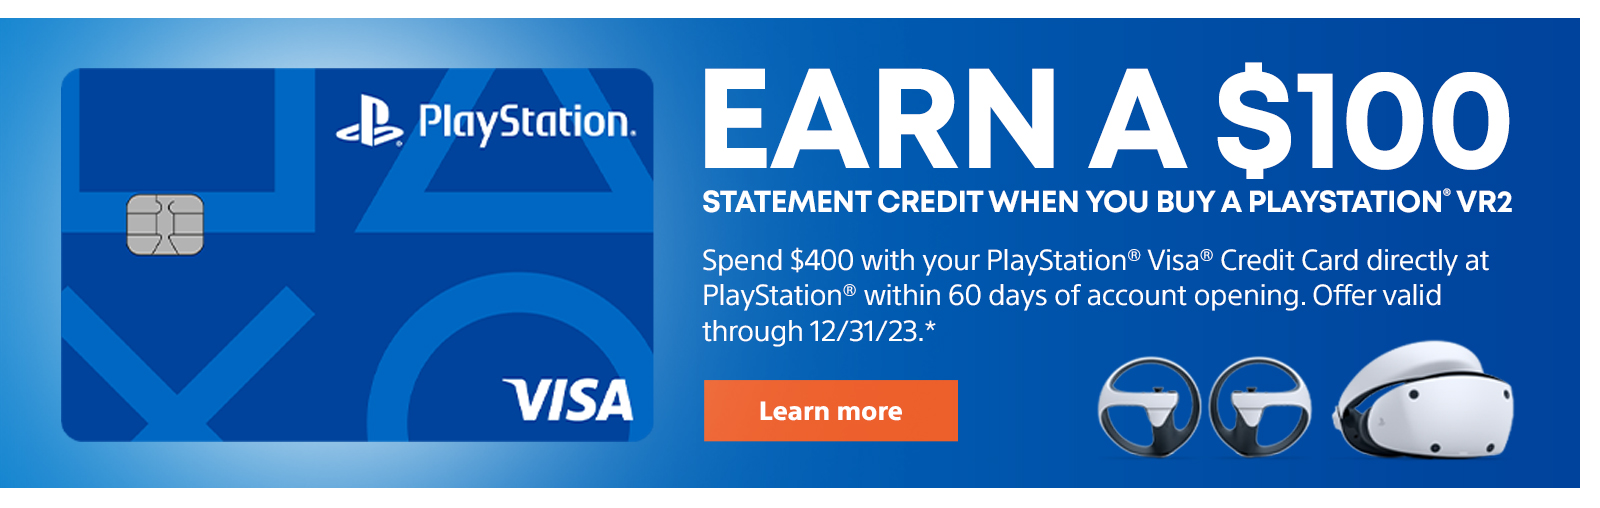 Dapatkan kredit penyata $ 100 apabila anda membeli PlayStation VR2. Gunakan kad kredit PlayStation Visa untuk membelanjakan $ 400 secara langsung di PlayStation dalam tempoh 60 hari pembukaan akaun. Tawaran sah melalui 12/31/23